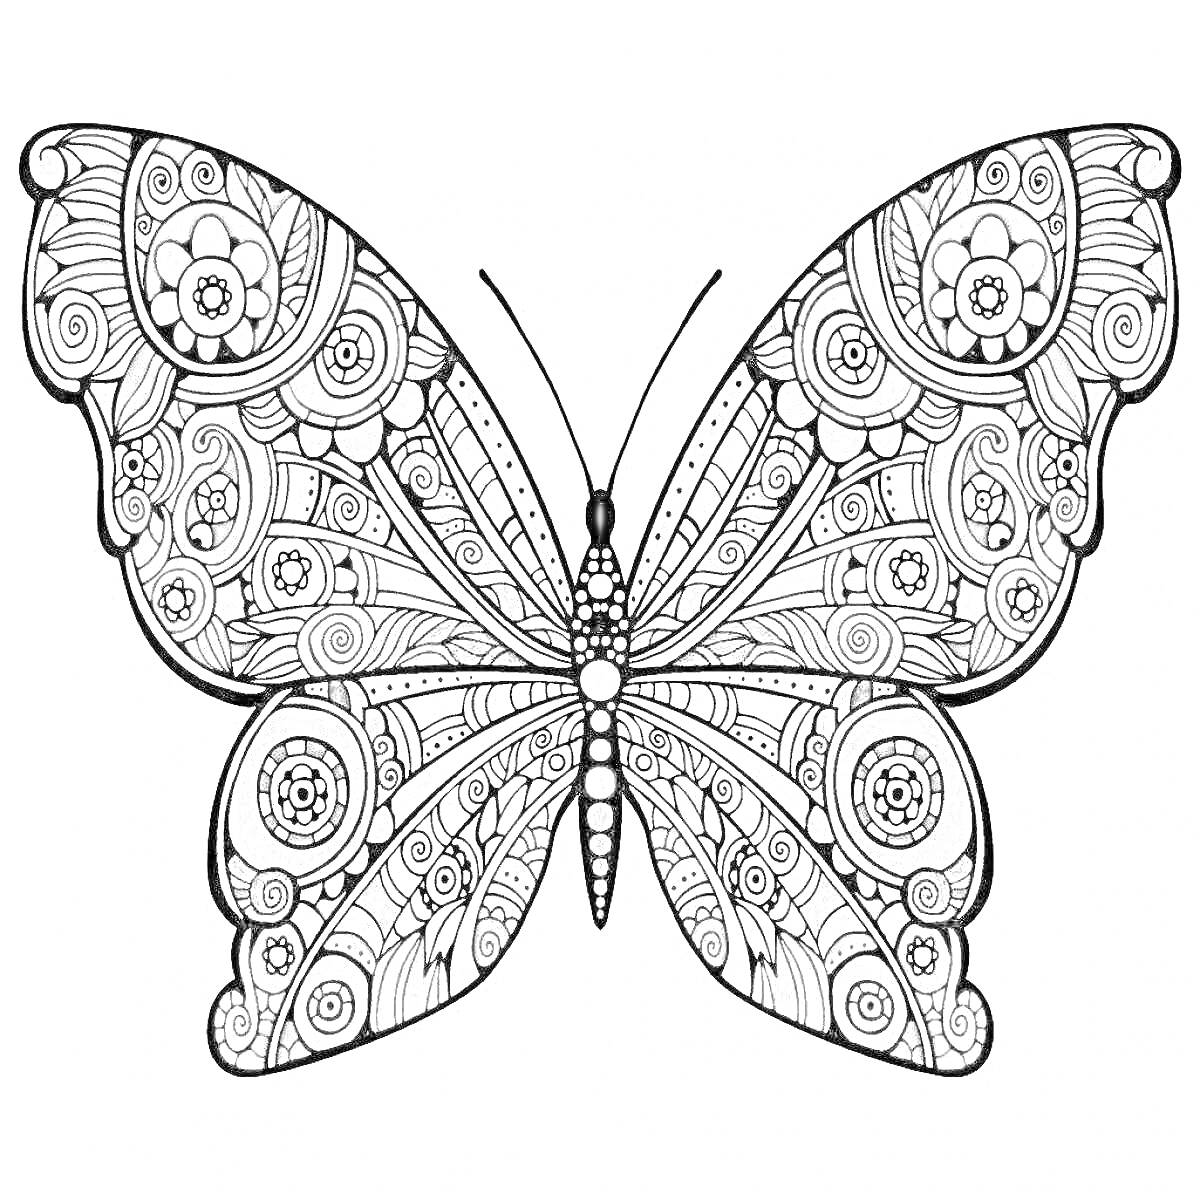 Раскраска Раскраска с цветной бабочкой, включающая детализированные контуры крыльев с цветочными и геометрическими узорами.